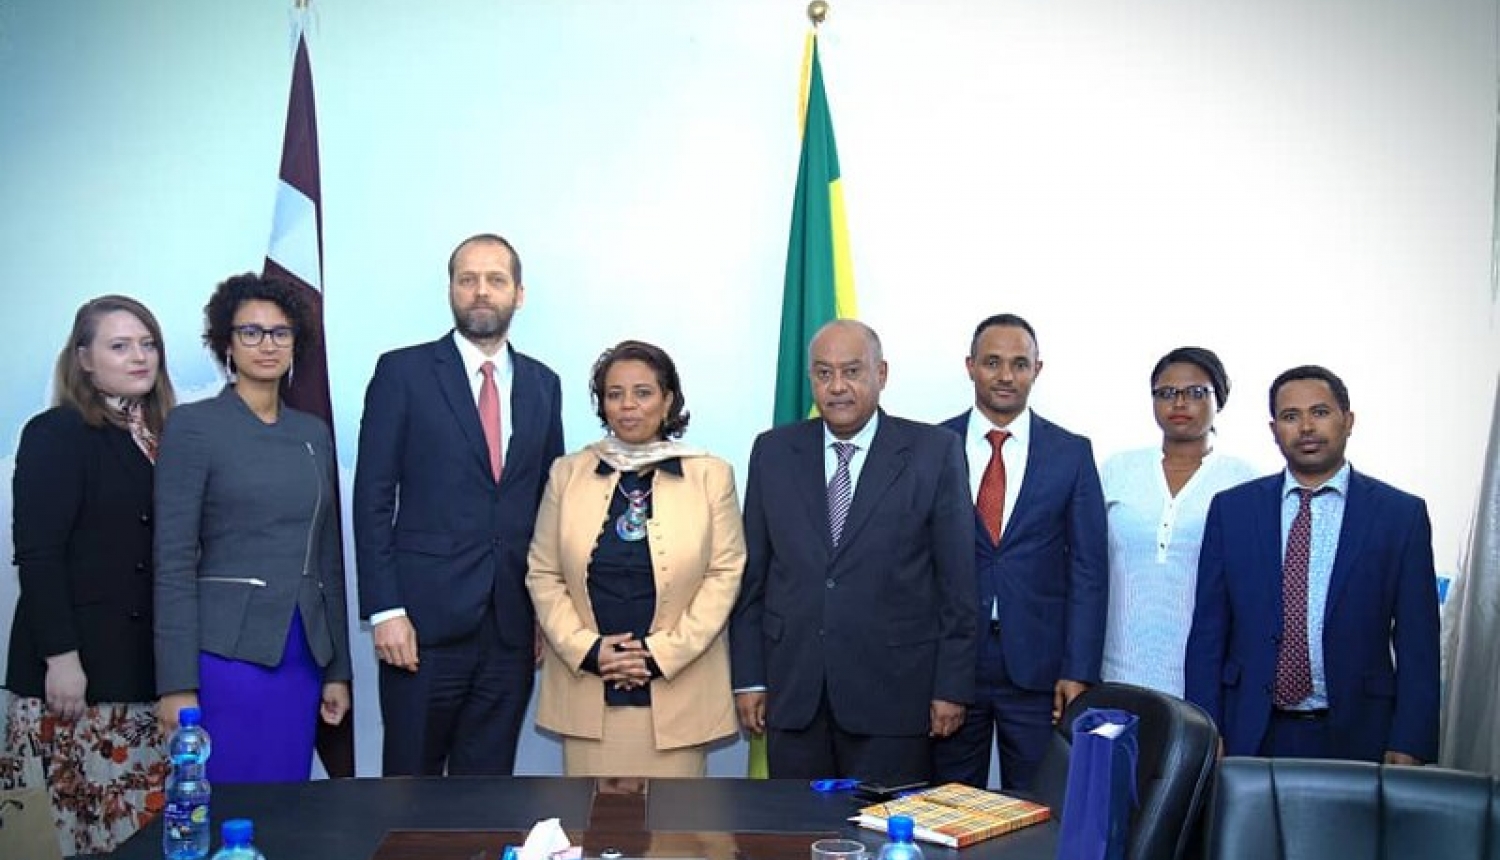 Etiopija aicina Latviju stiprināt klātbūtni Āfrikā